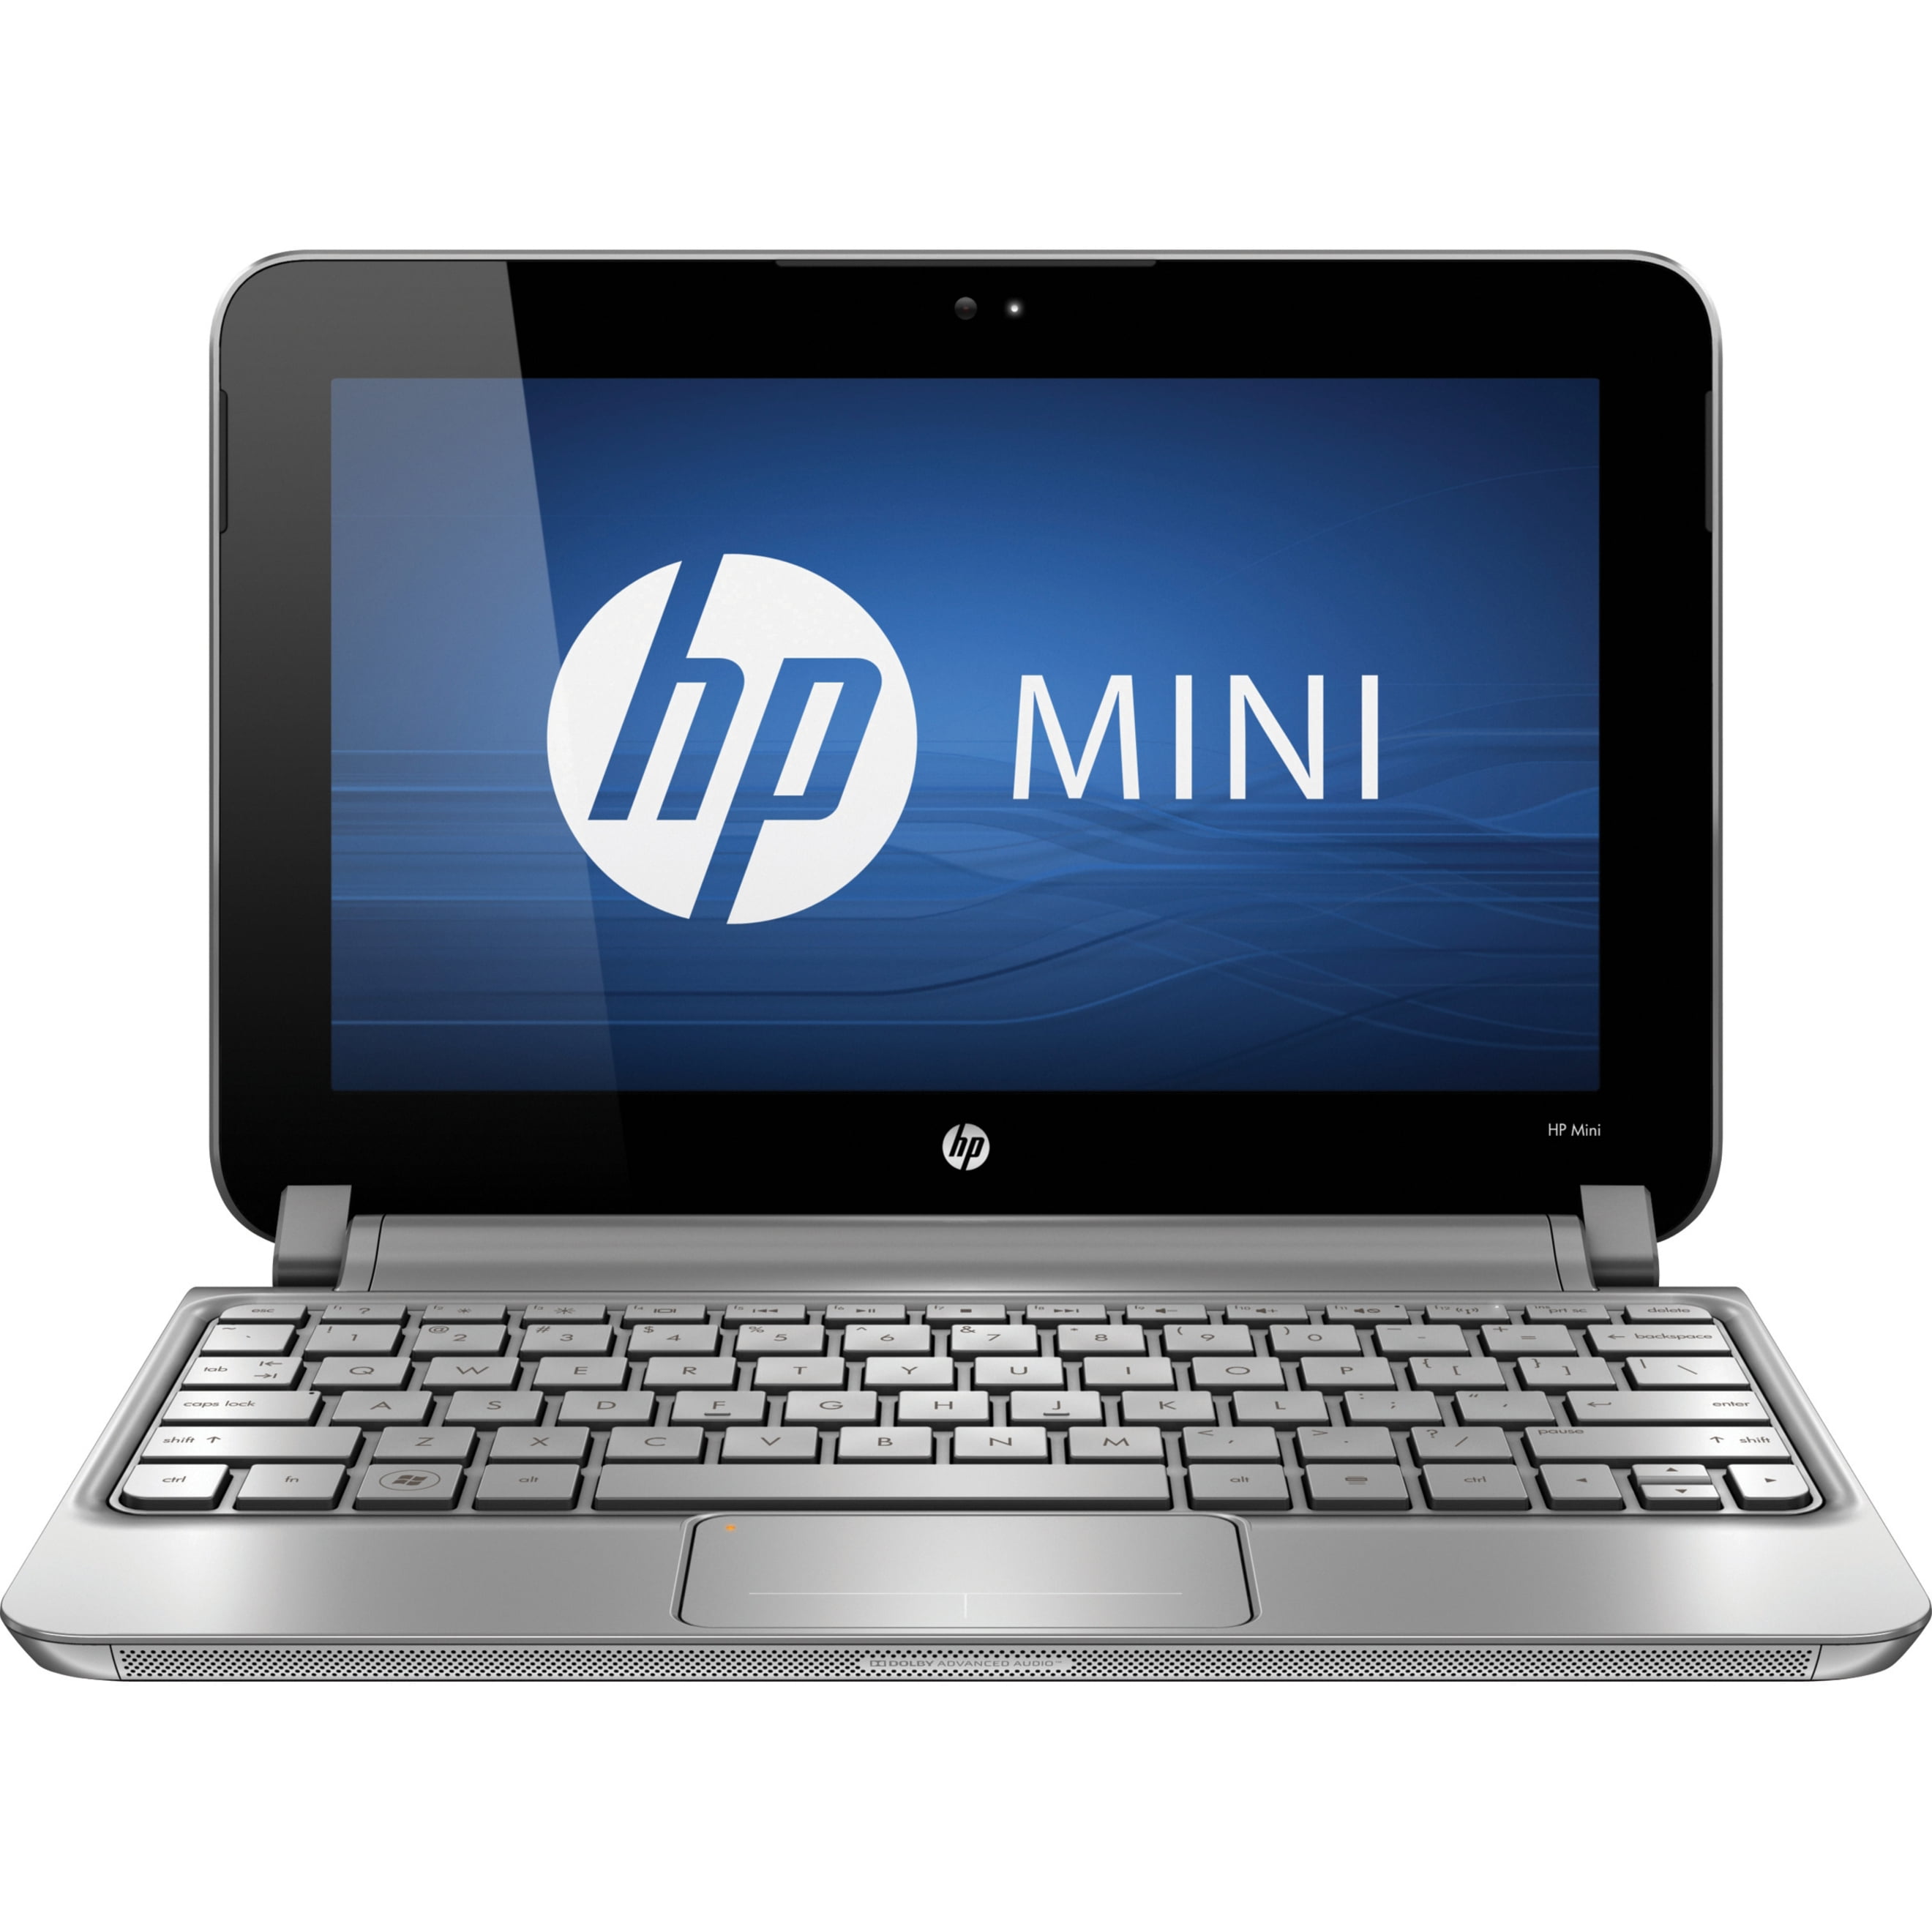 aanvaardbaar hersenen Haringen HP Mini 10.1" Netbook, Intel Atom N455, 250GB HD, Windows 7 Starter,  210-2090NR - Walmart.com